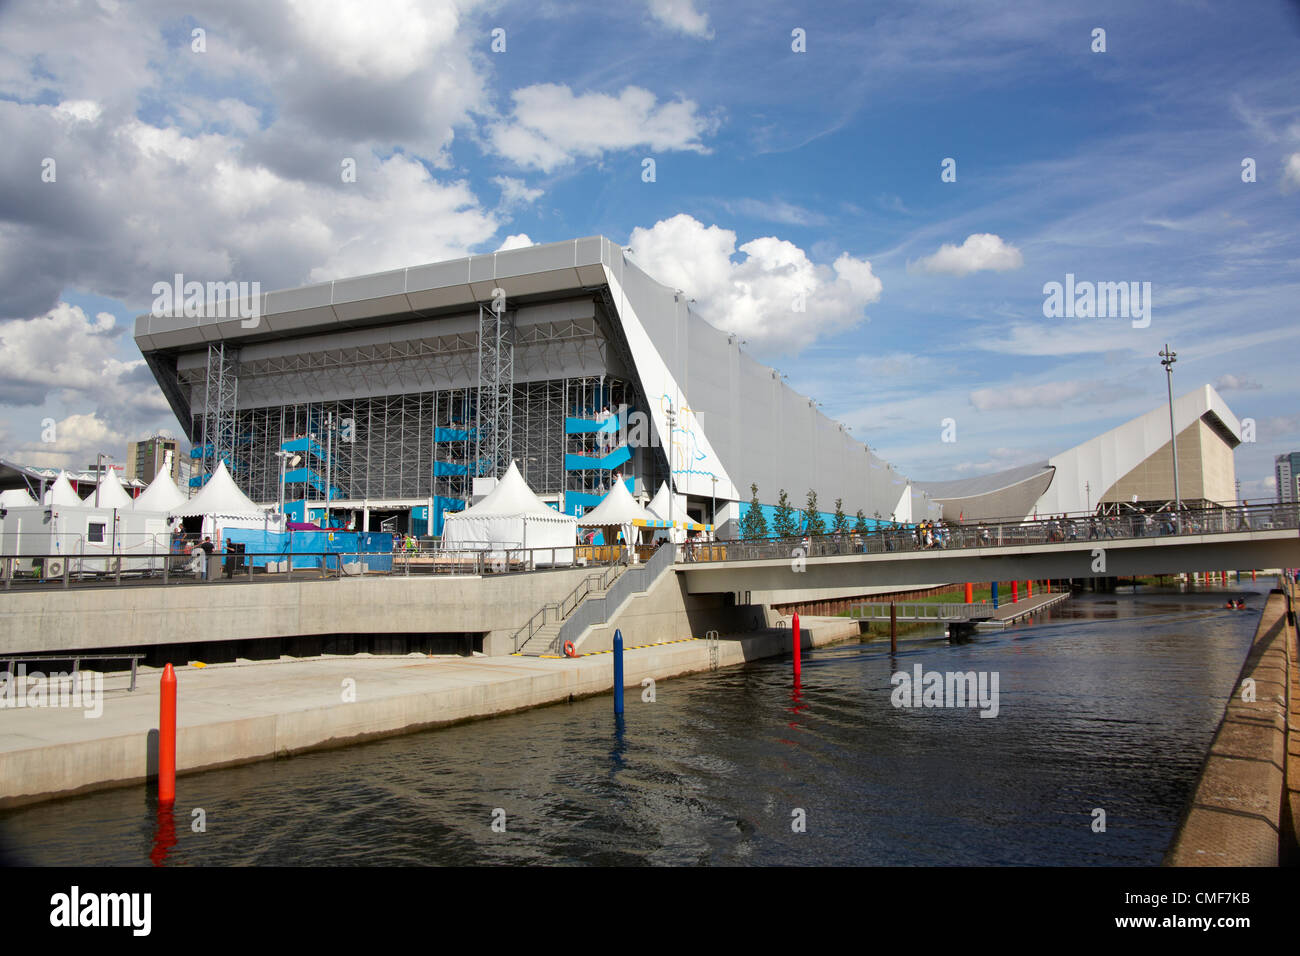 Waterpolo Arena en un día soleado en el Parque Olímpico, el sitio de los Juegos Olímpicos de Londres 2012, Stratford London E20, REINO UNIDO Foto de stock